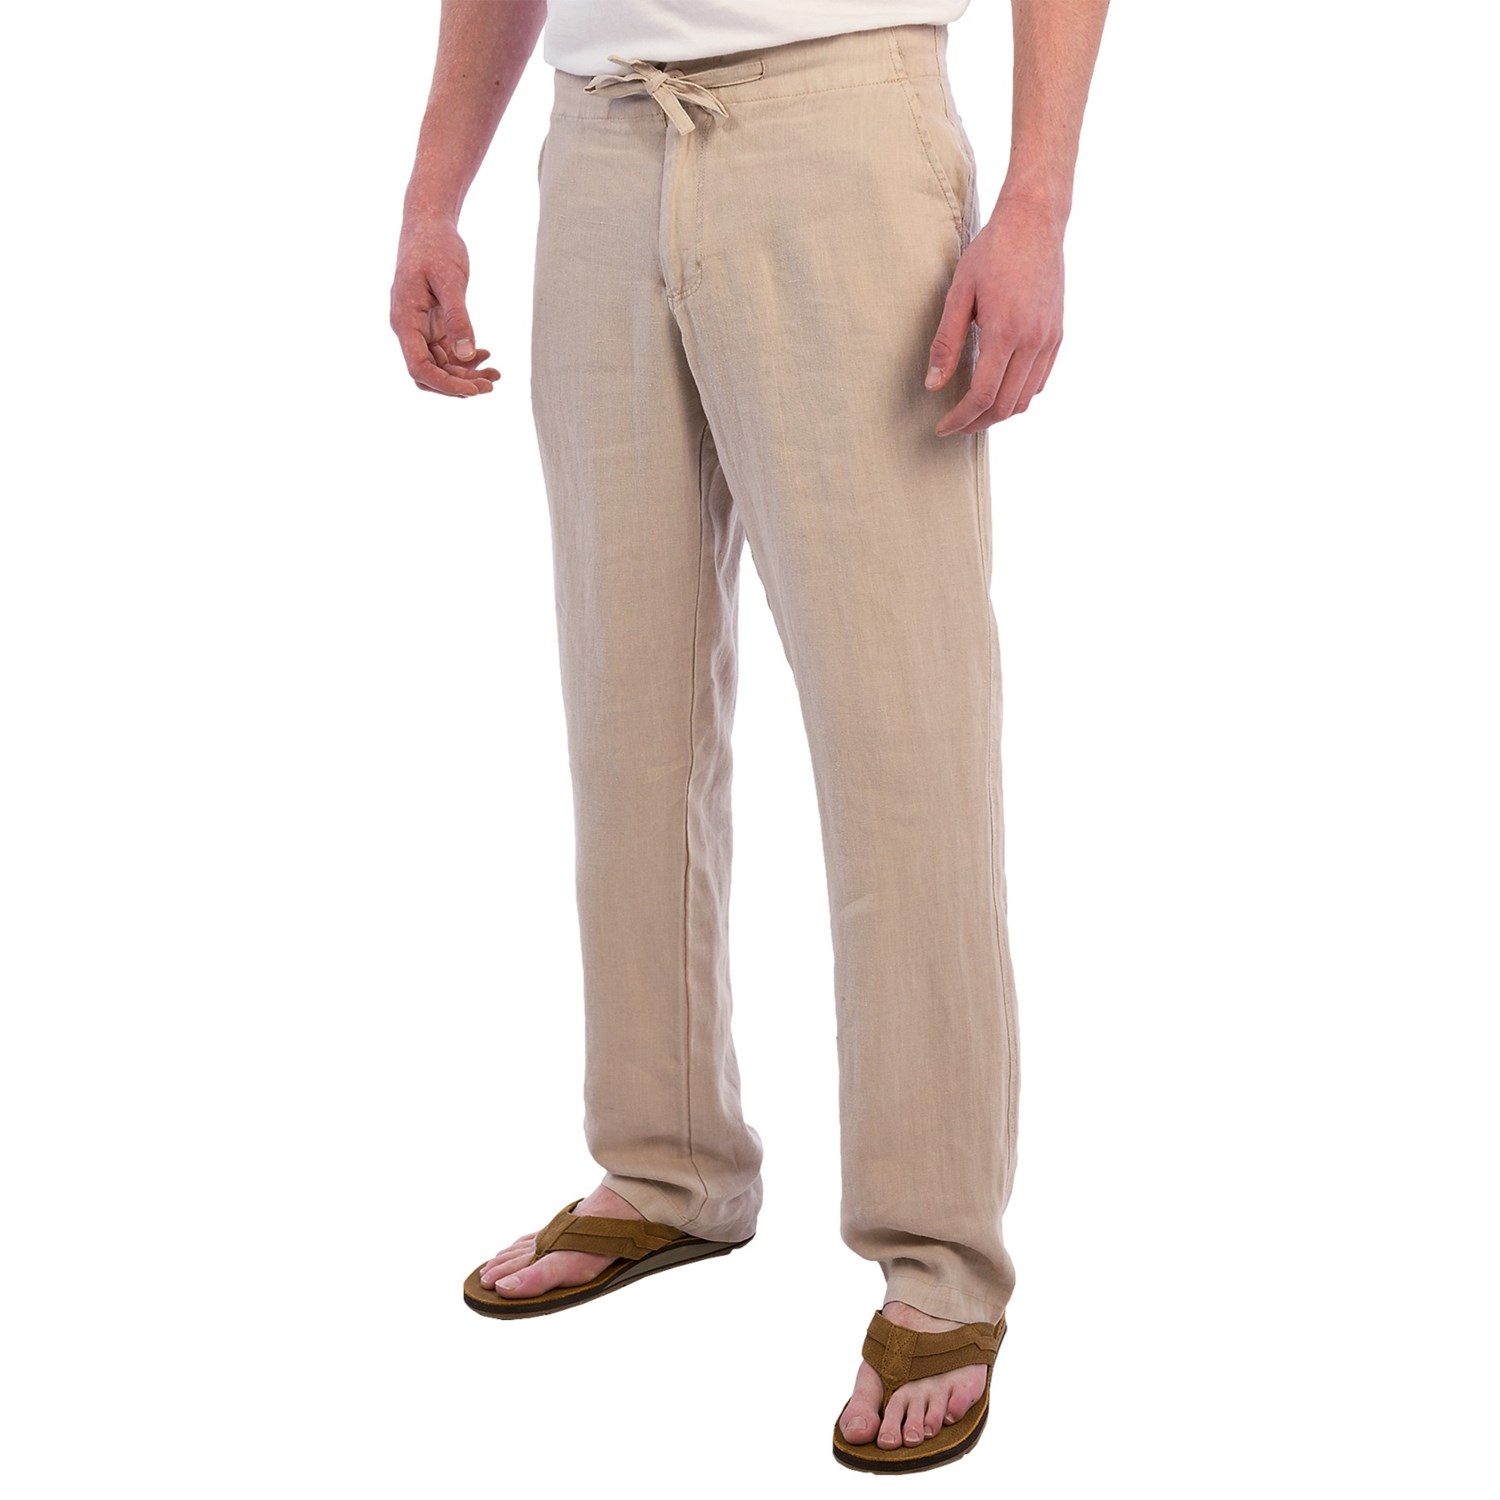 Toscano Aqua Pants (For Men) 9288M - Save 63%